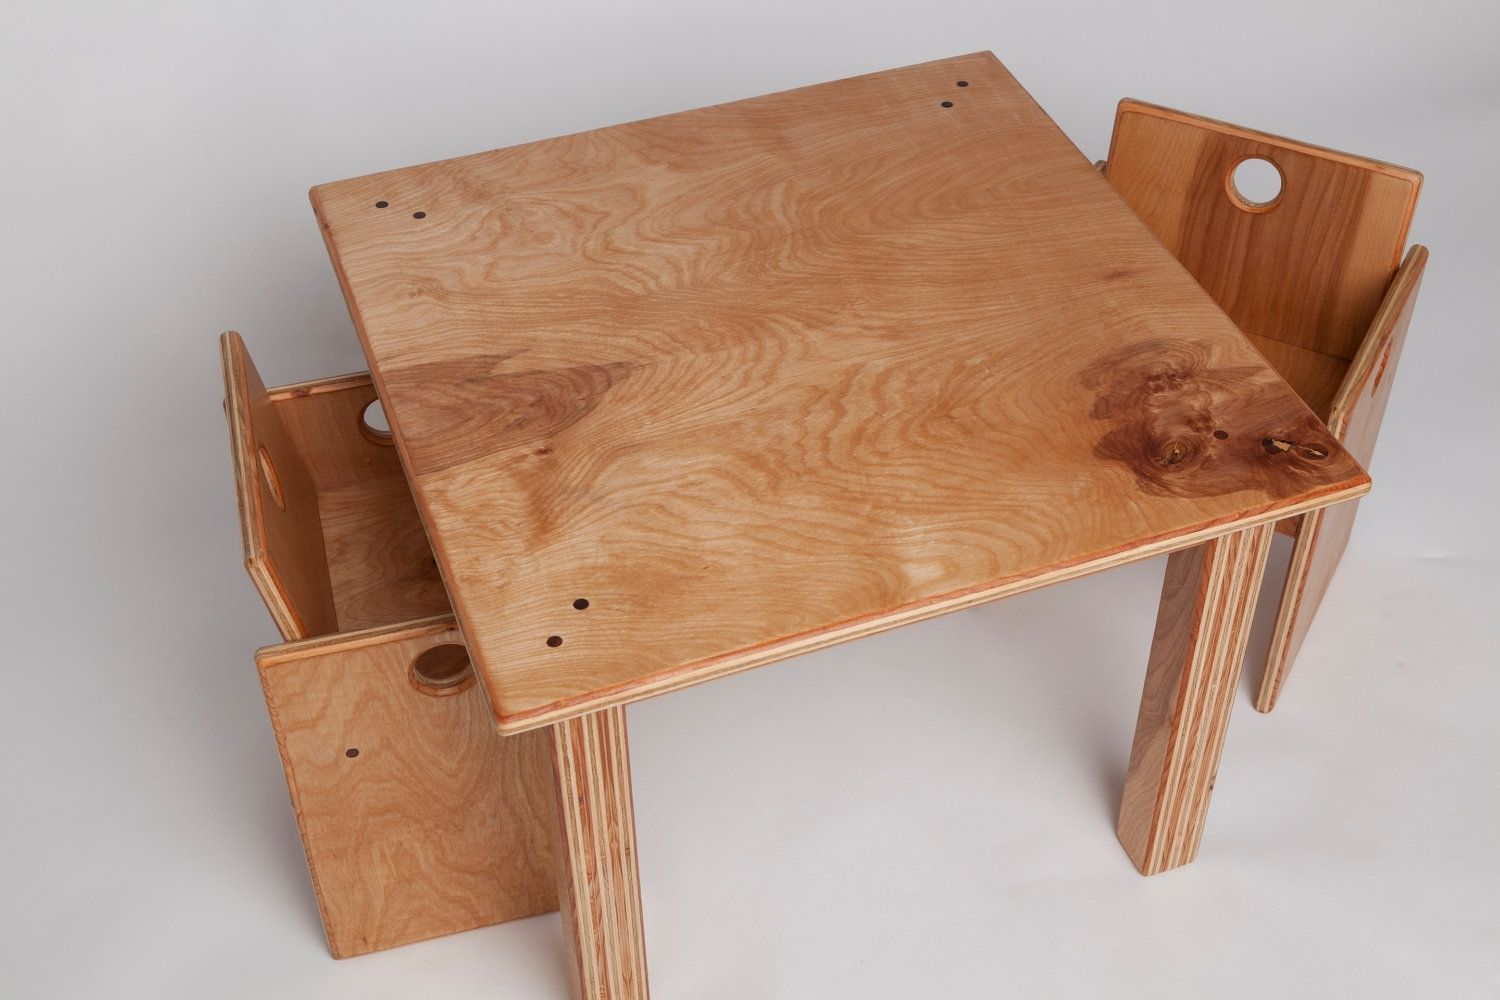 стол для детей своими руками из дерева